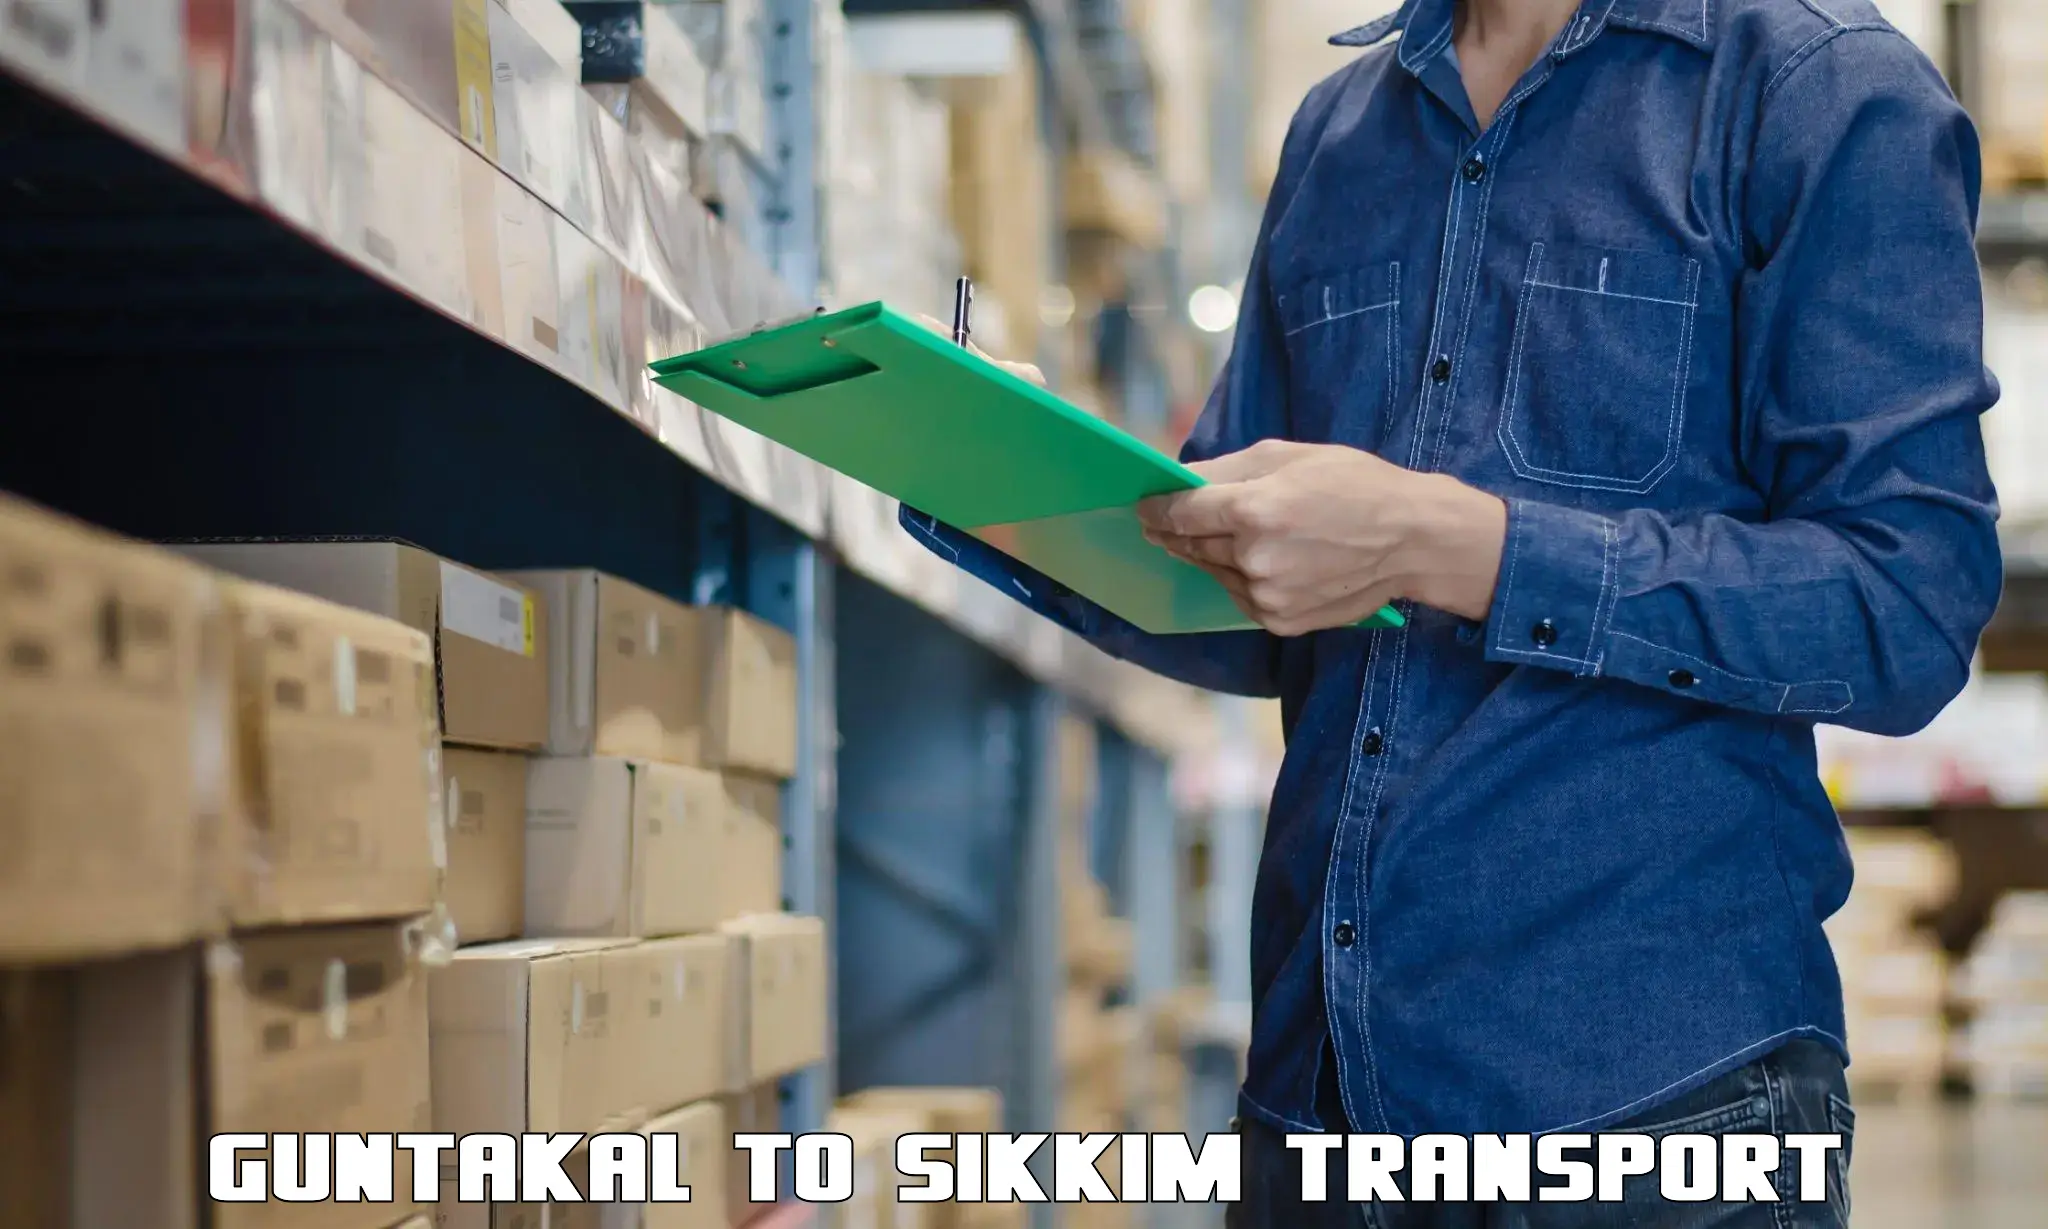 Logistics transportation services in Guntakal to Singtam